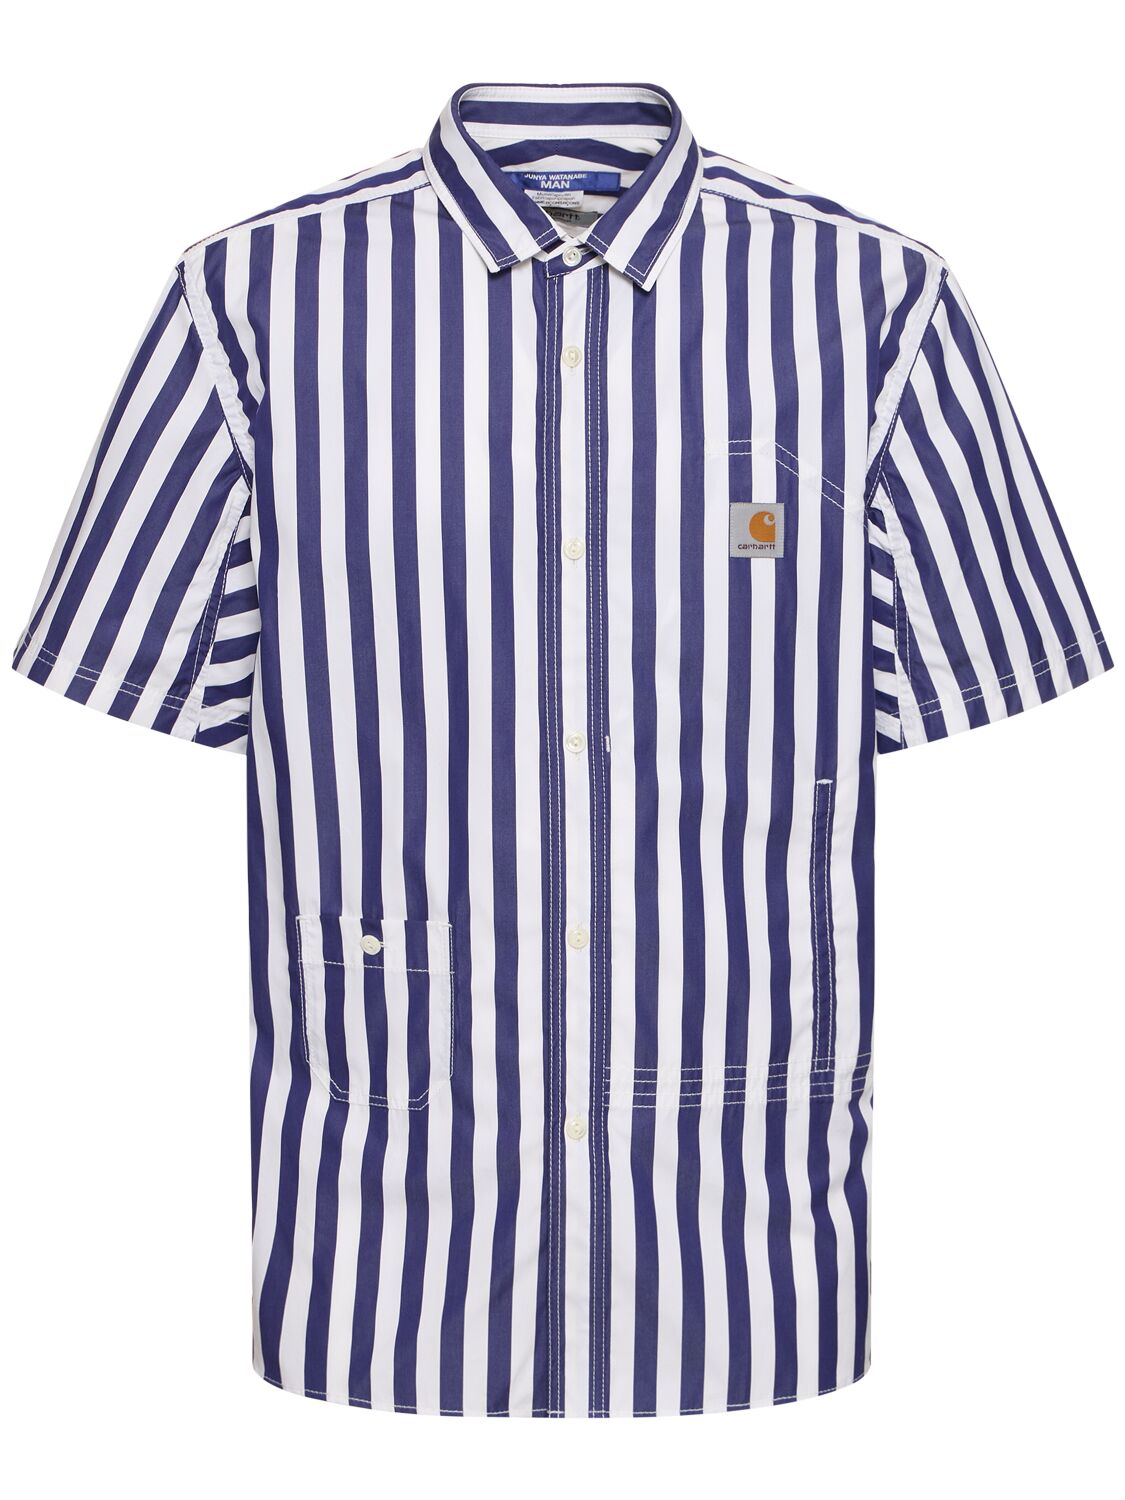 Carhartt Striped Cotton Shirt